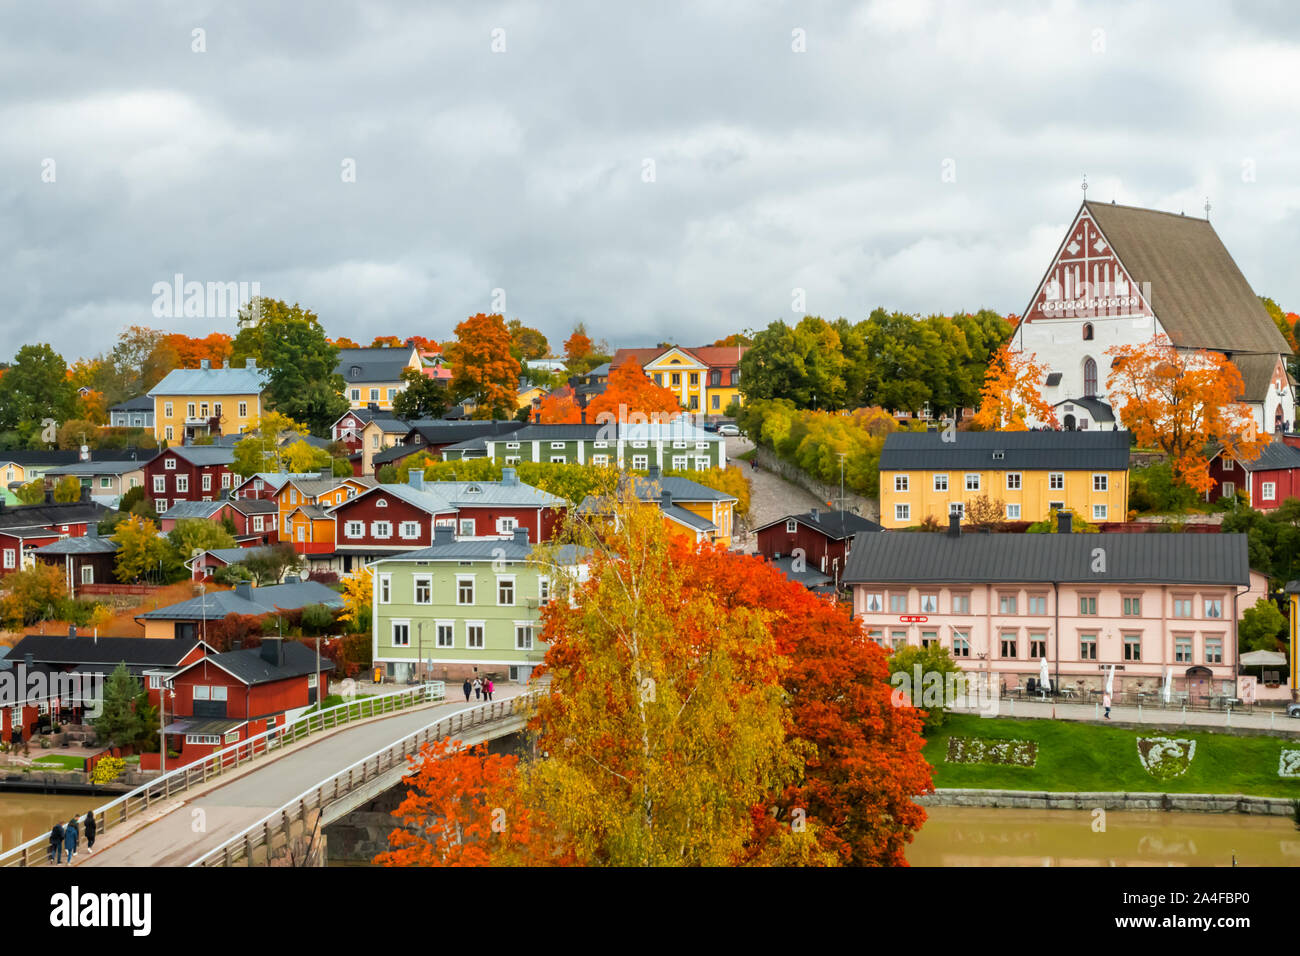 Auf die Altstadt von Porvoo, Finnland. Schöne Stadt Herbst Landschaft mit Porvoo Cathedral und bunten Holzhäusern. Stockfoto